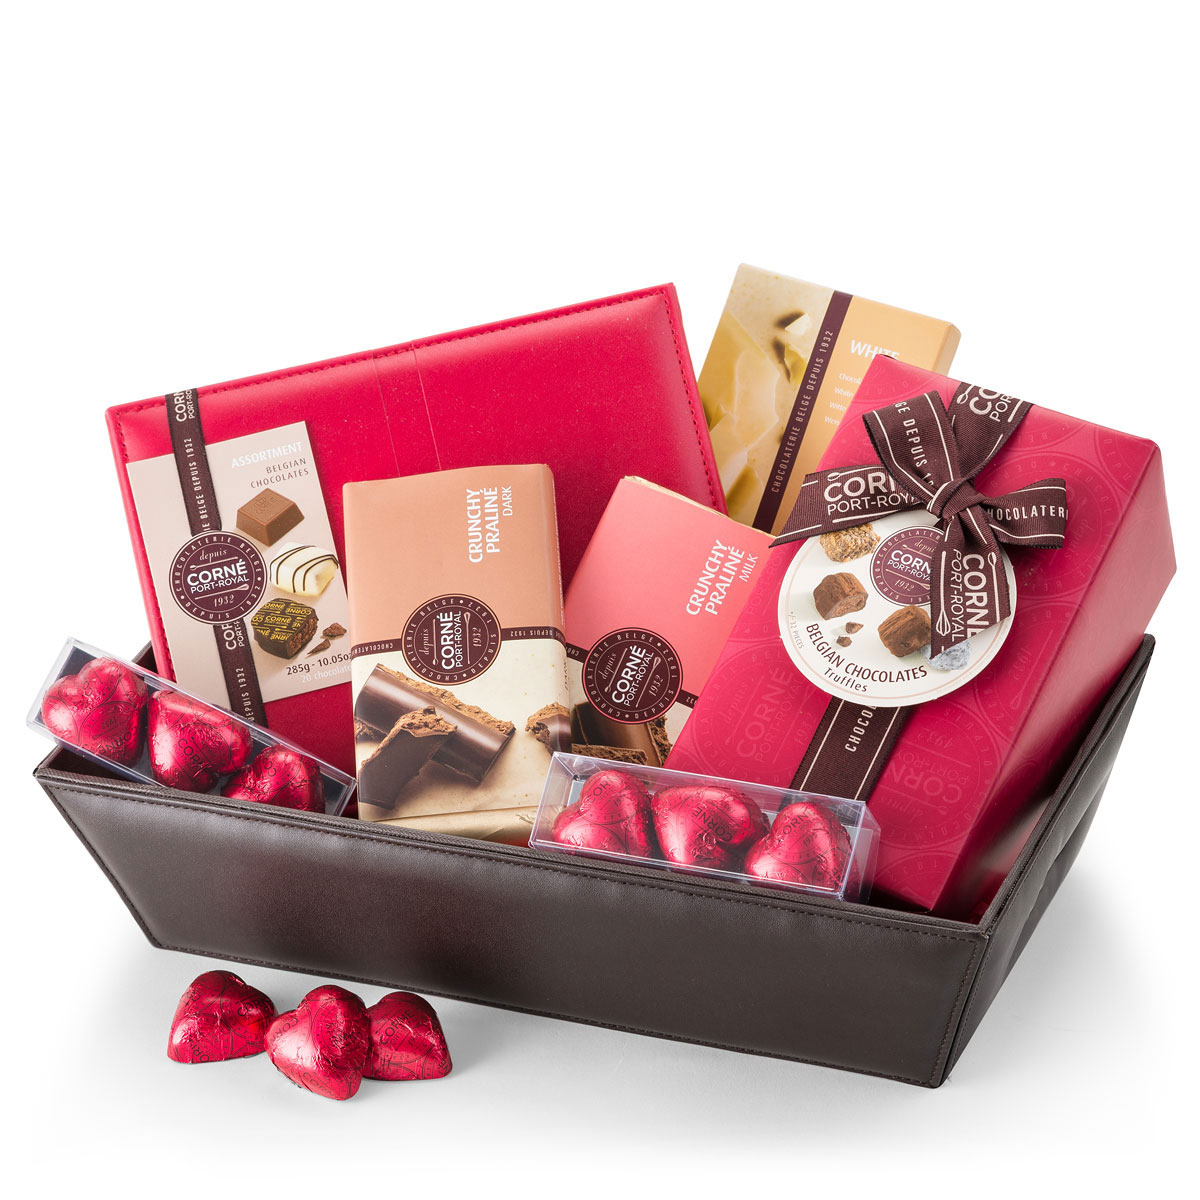 ارسال هدیه به فرانسه – ارسال قهوه- شکلات به فرانسه-تبریک- ولنتاین- جعبه- قهوه- شکلات